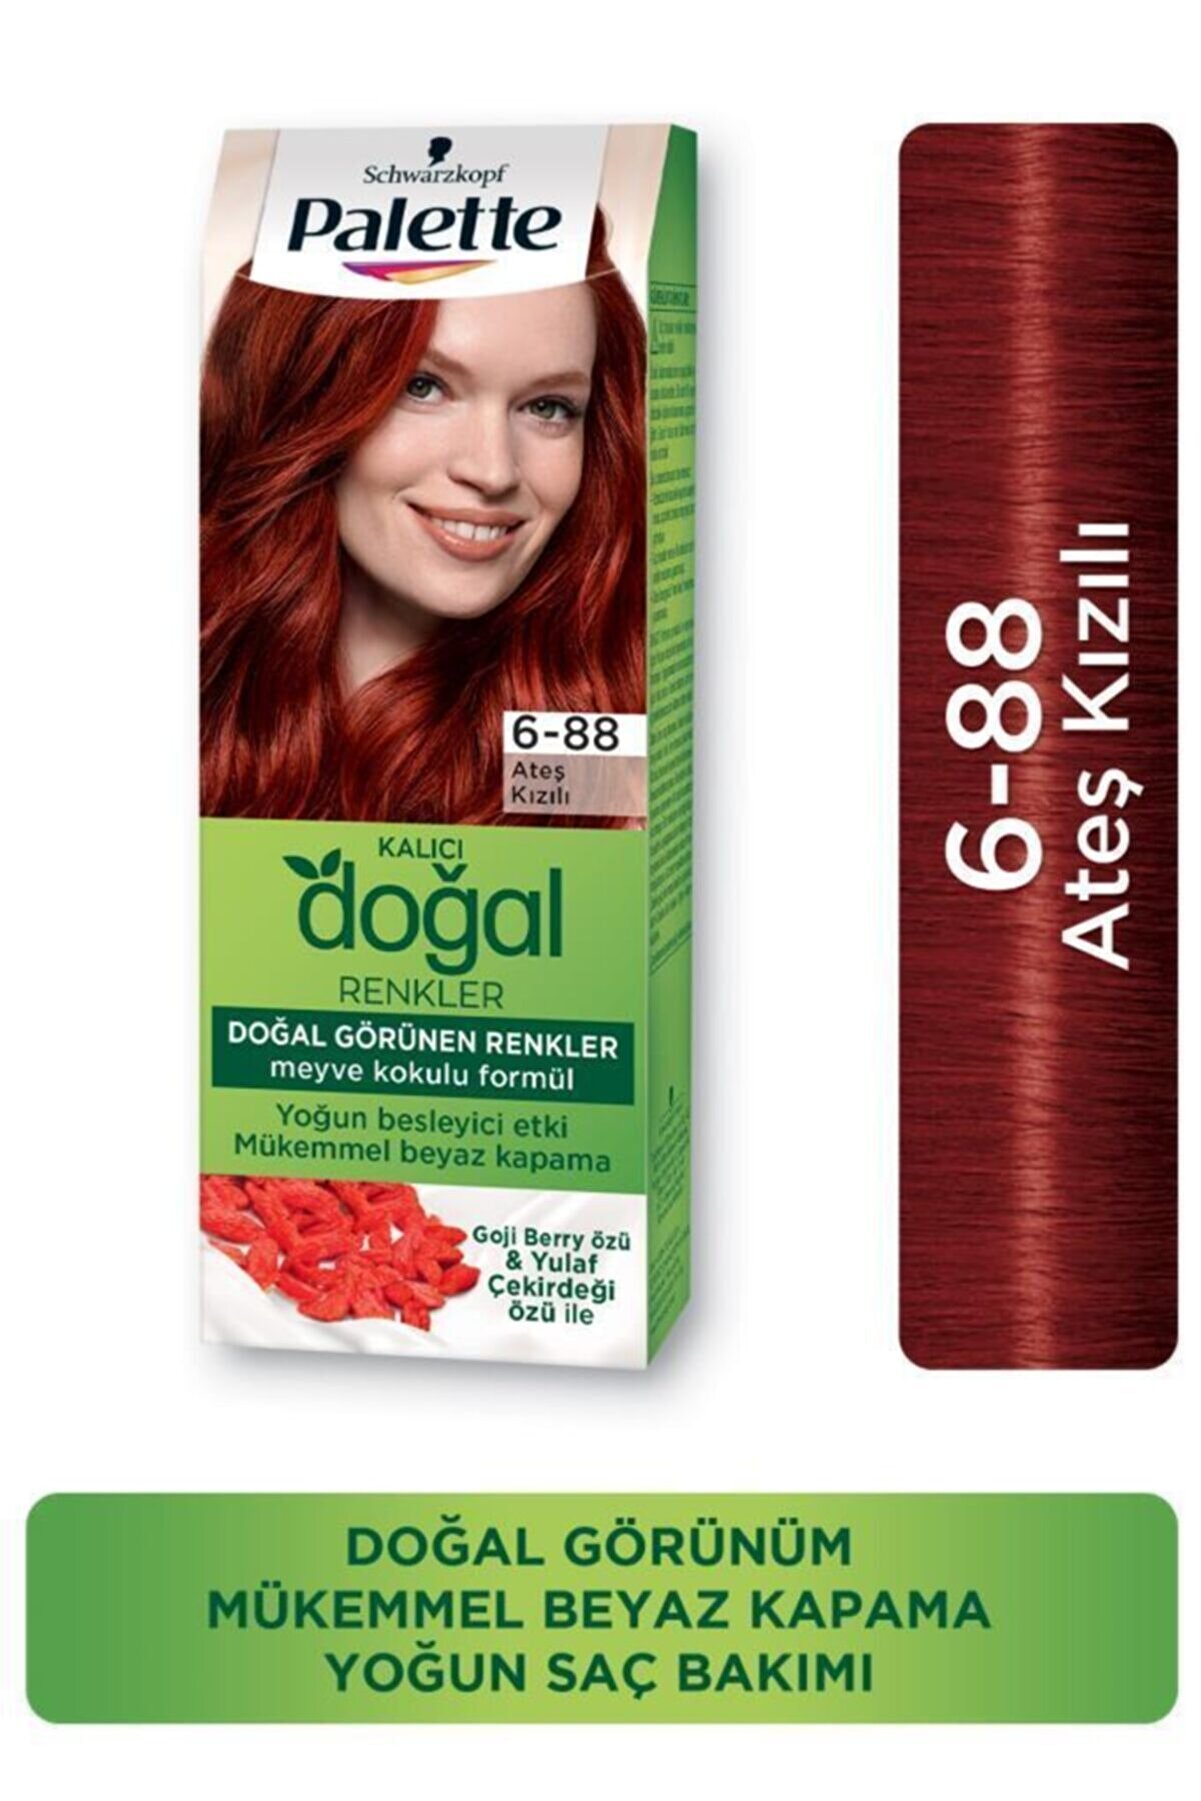 Palette Palette Kalıcı Doğal Renkler Saç Boyası 6-88 Ateş Kızılı